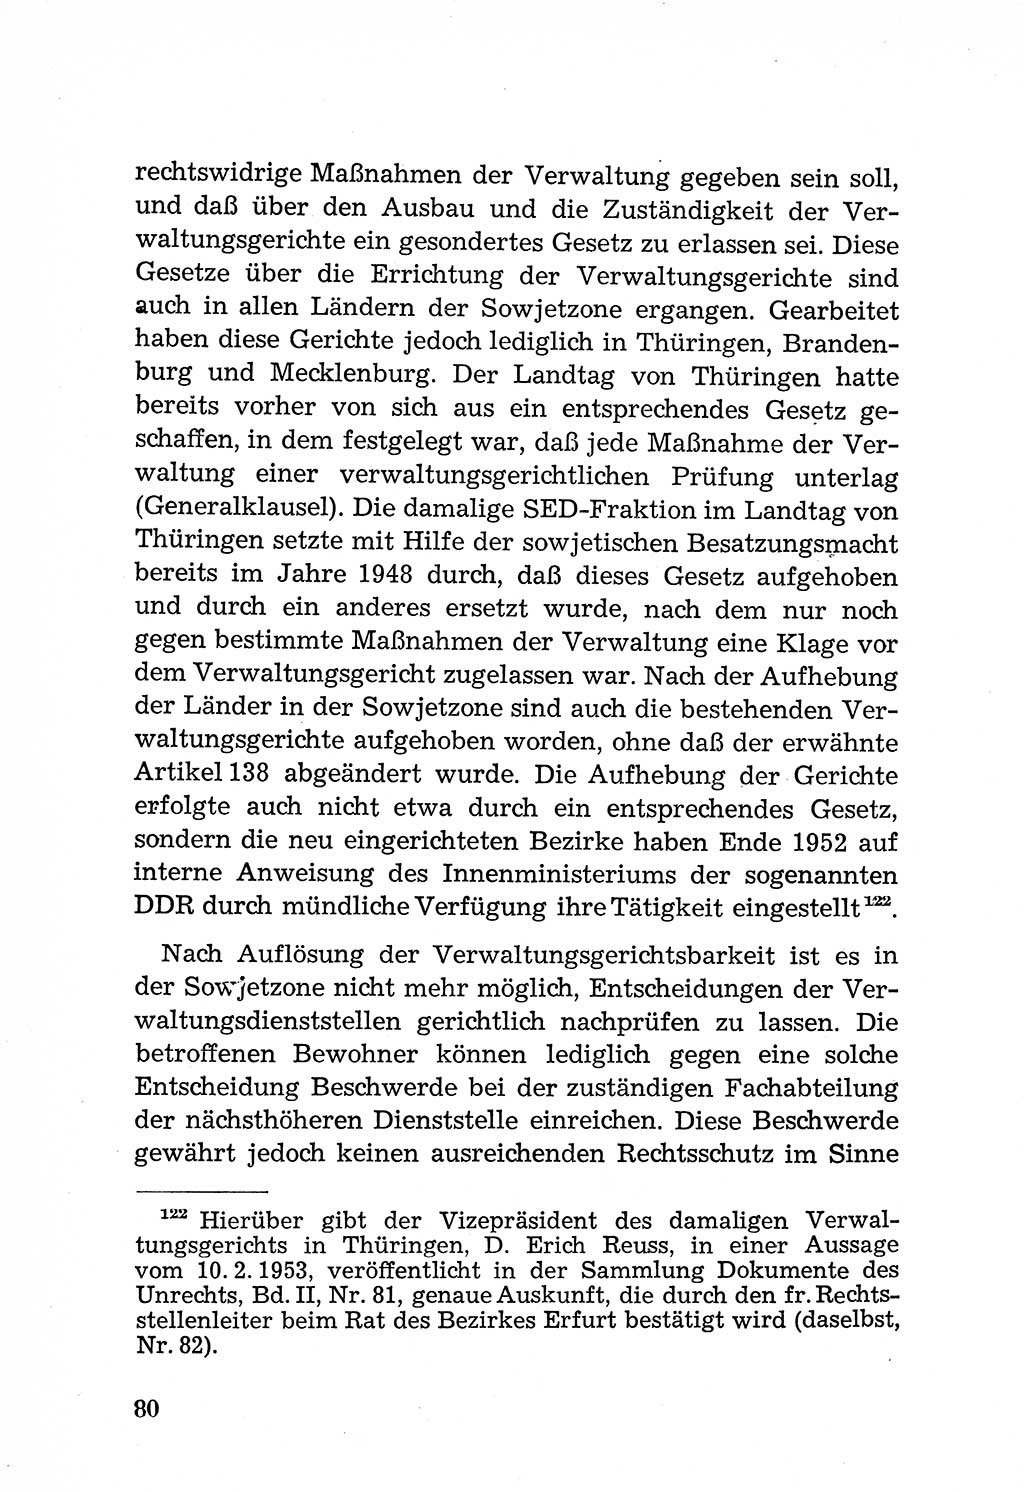 Rechtsstaat in zweierlei Hinsicht, UntersuchungsausschuÃŸ freiheitlicher Juristen (UfJ) [Bundesrepublik Deutschland (BRD)] 1956, Seite 80 (R.-St. UfJ BRD 1956, S. 80)